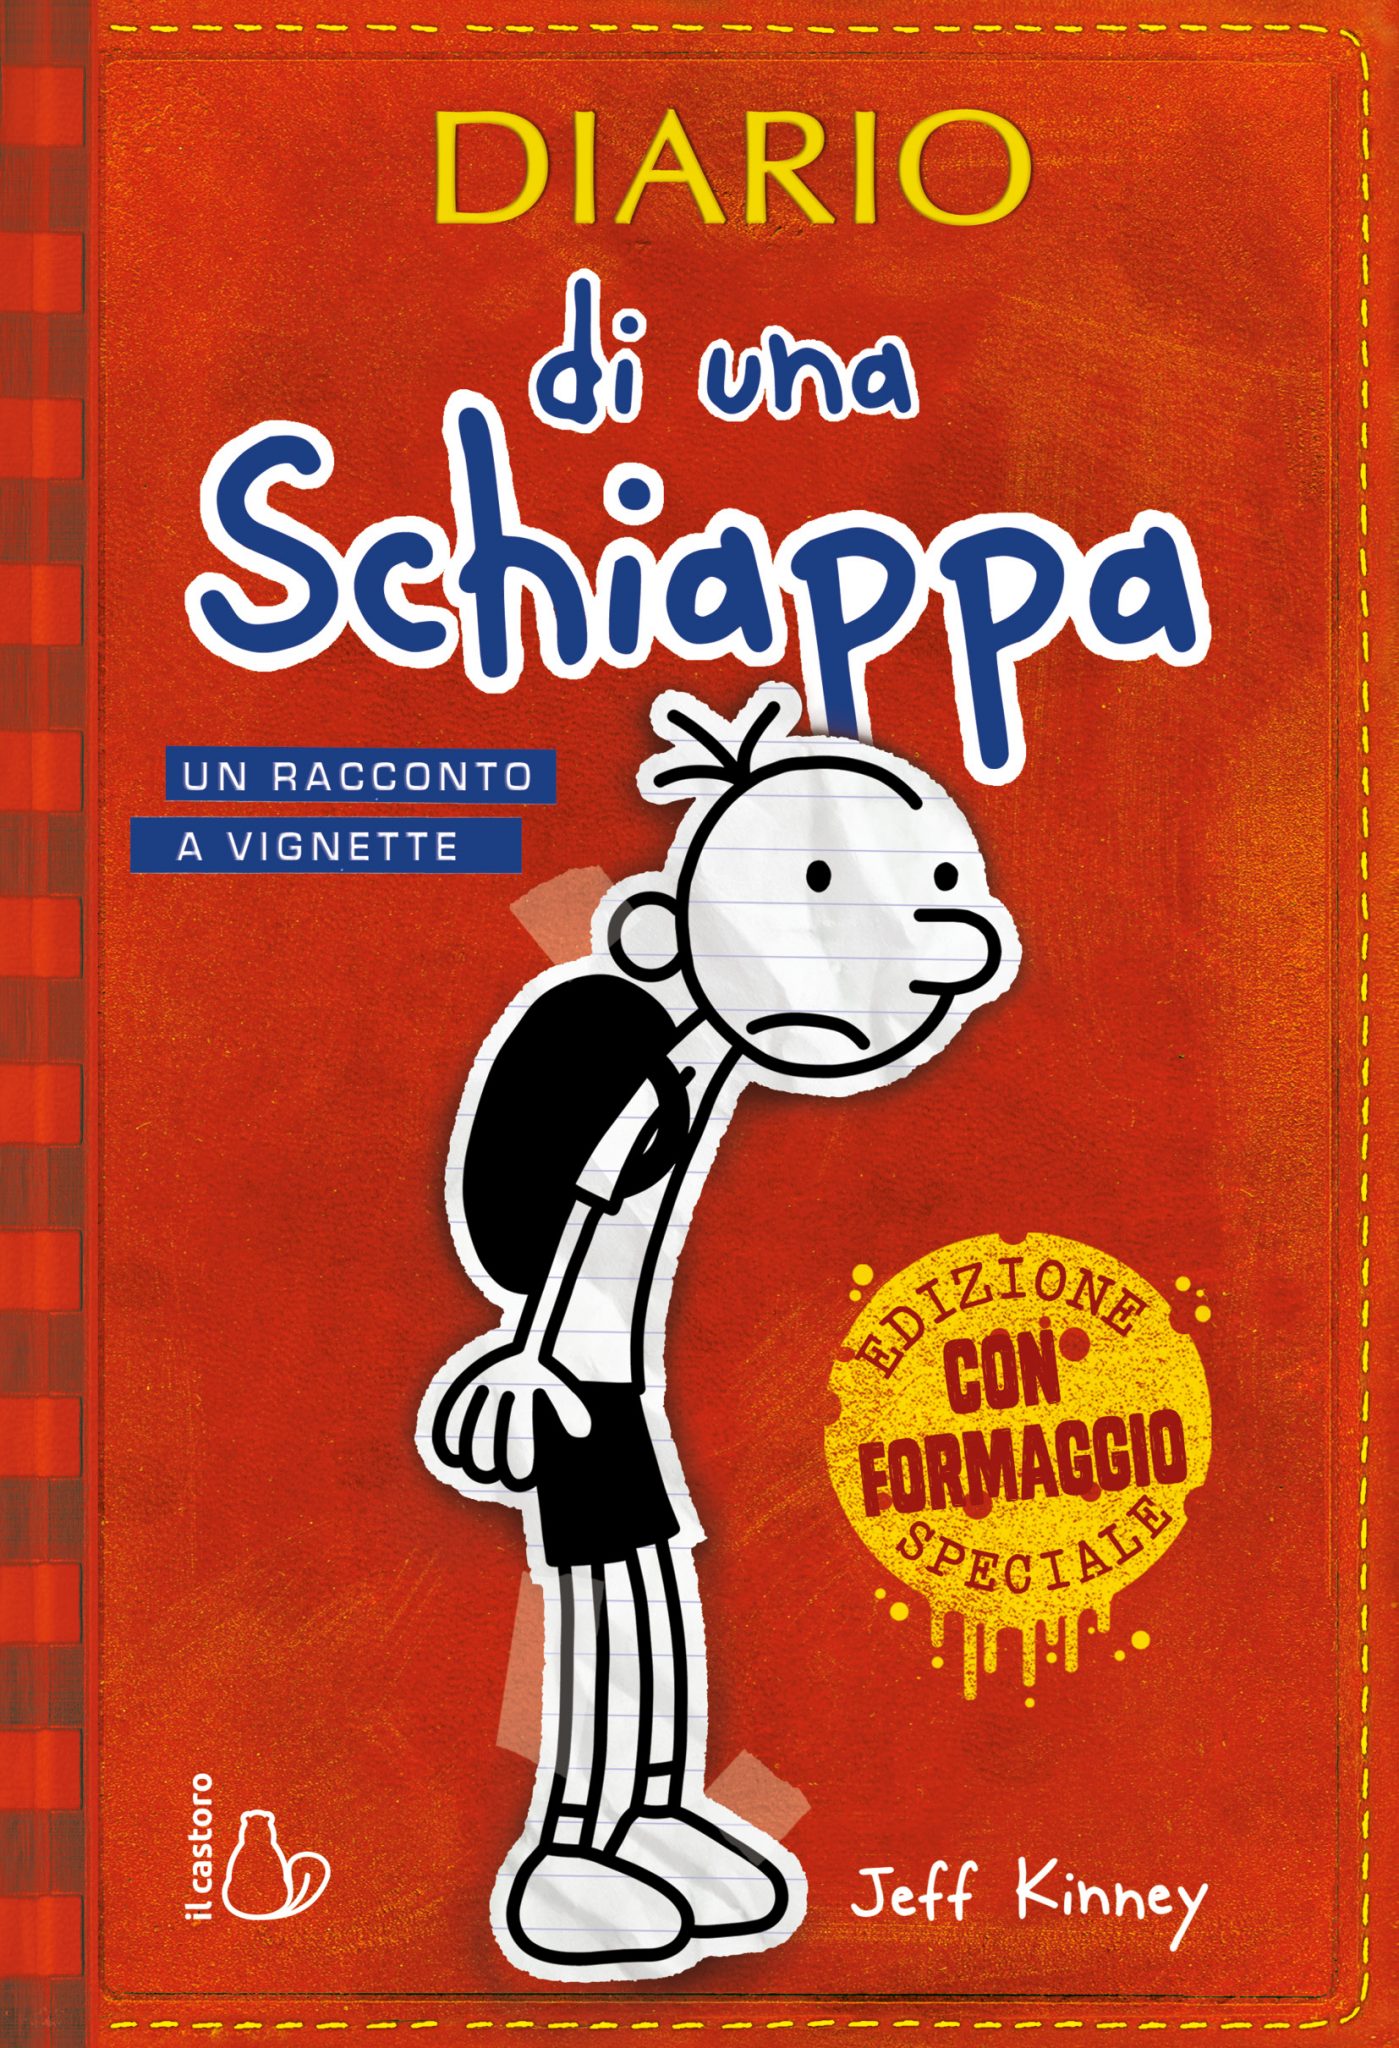 Diario di una Schiappa - Ed. speciale con Formaggio - Editrice Il